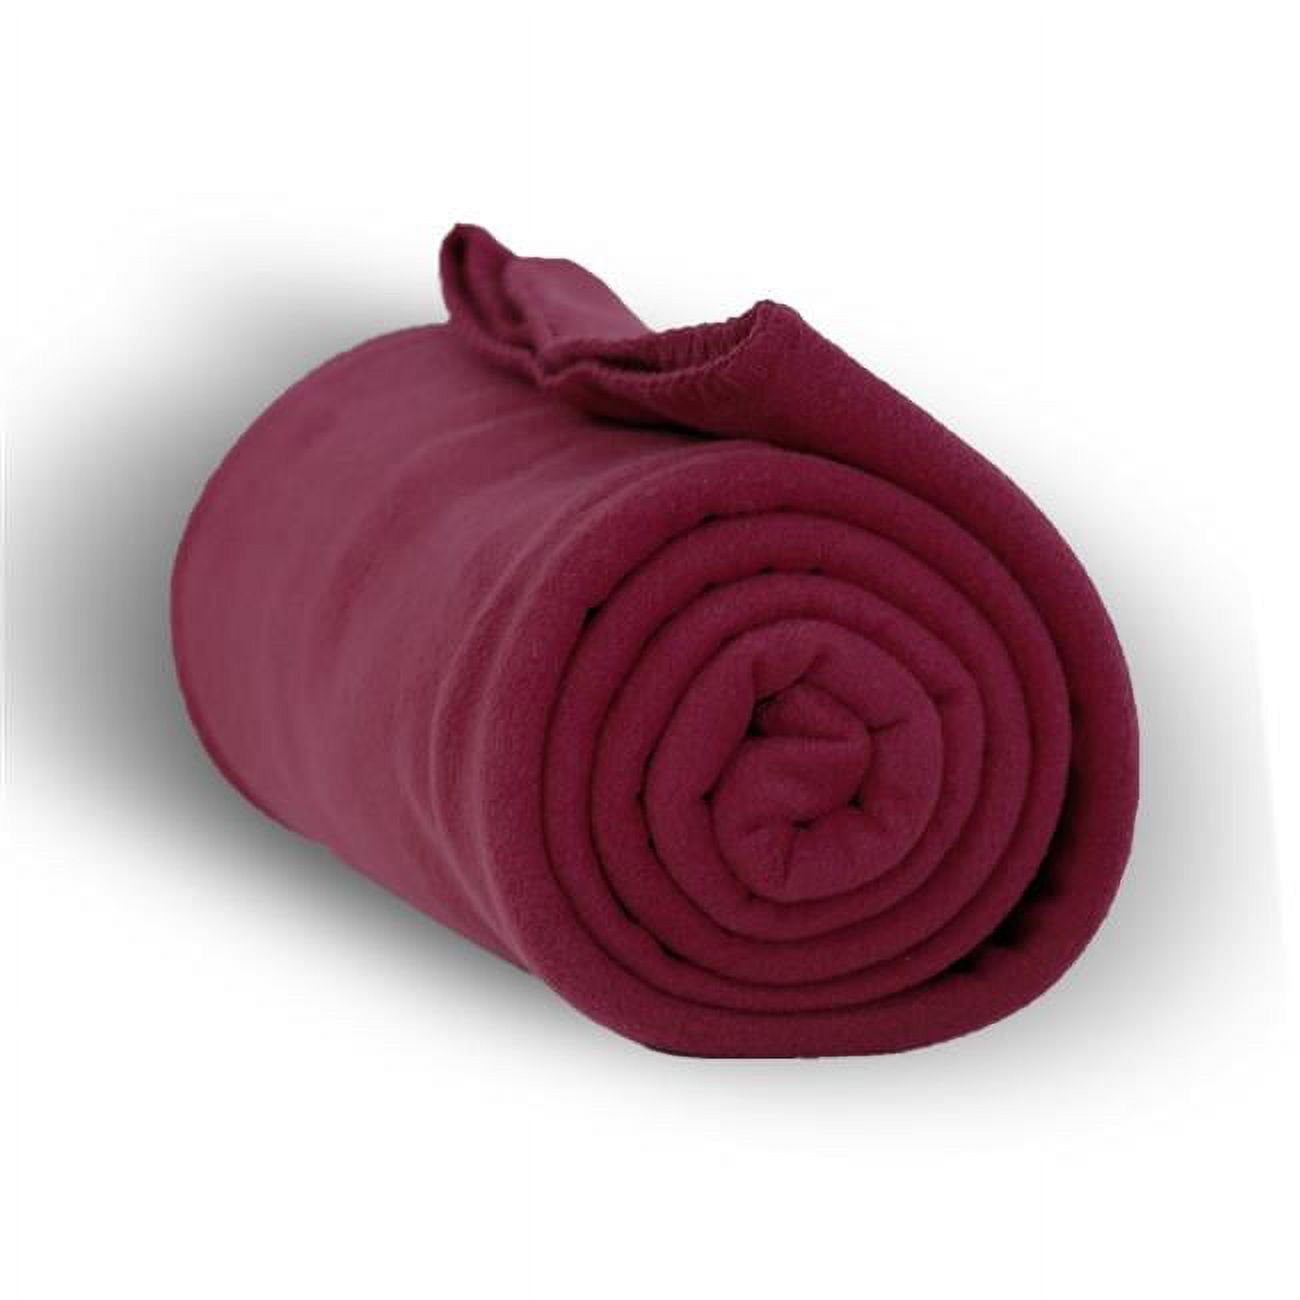 Heavy Weight Fleece Blanket Throw, Burgundy - 50 X 60 In. - Case Of 24